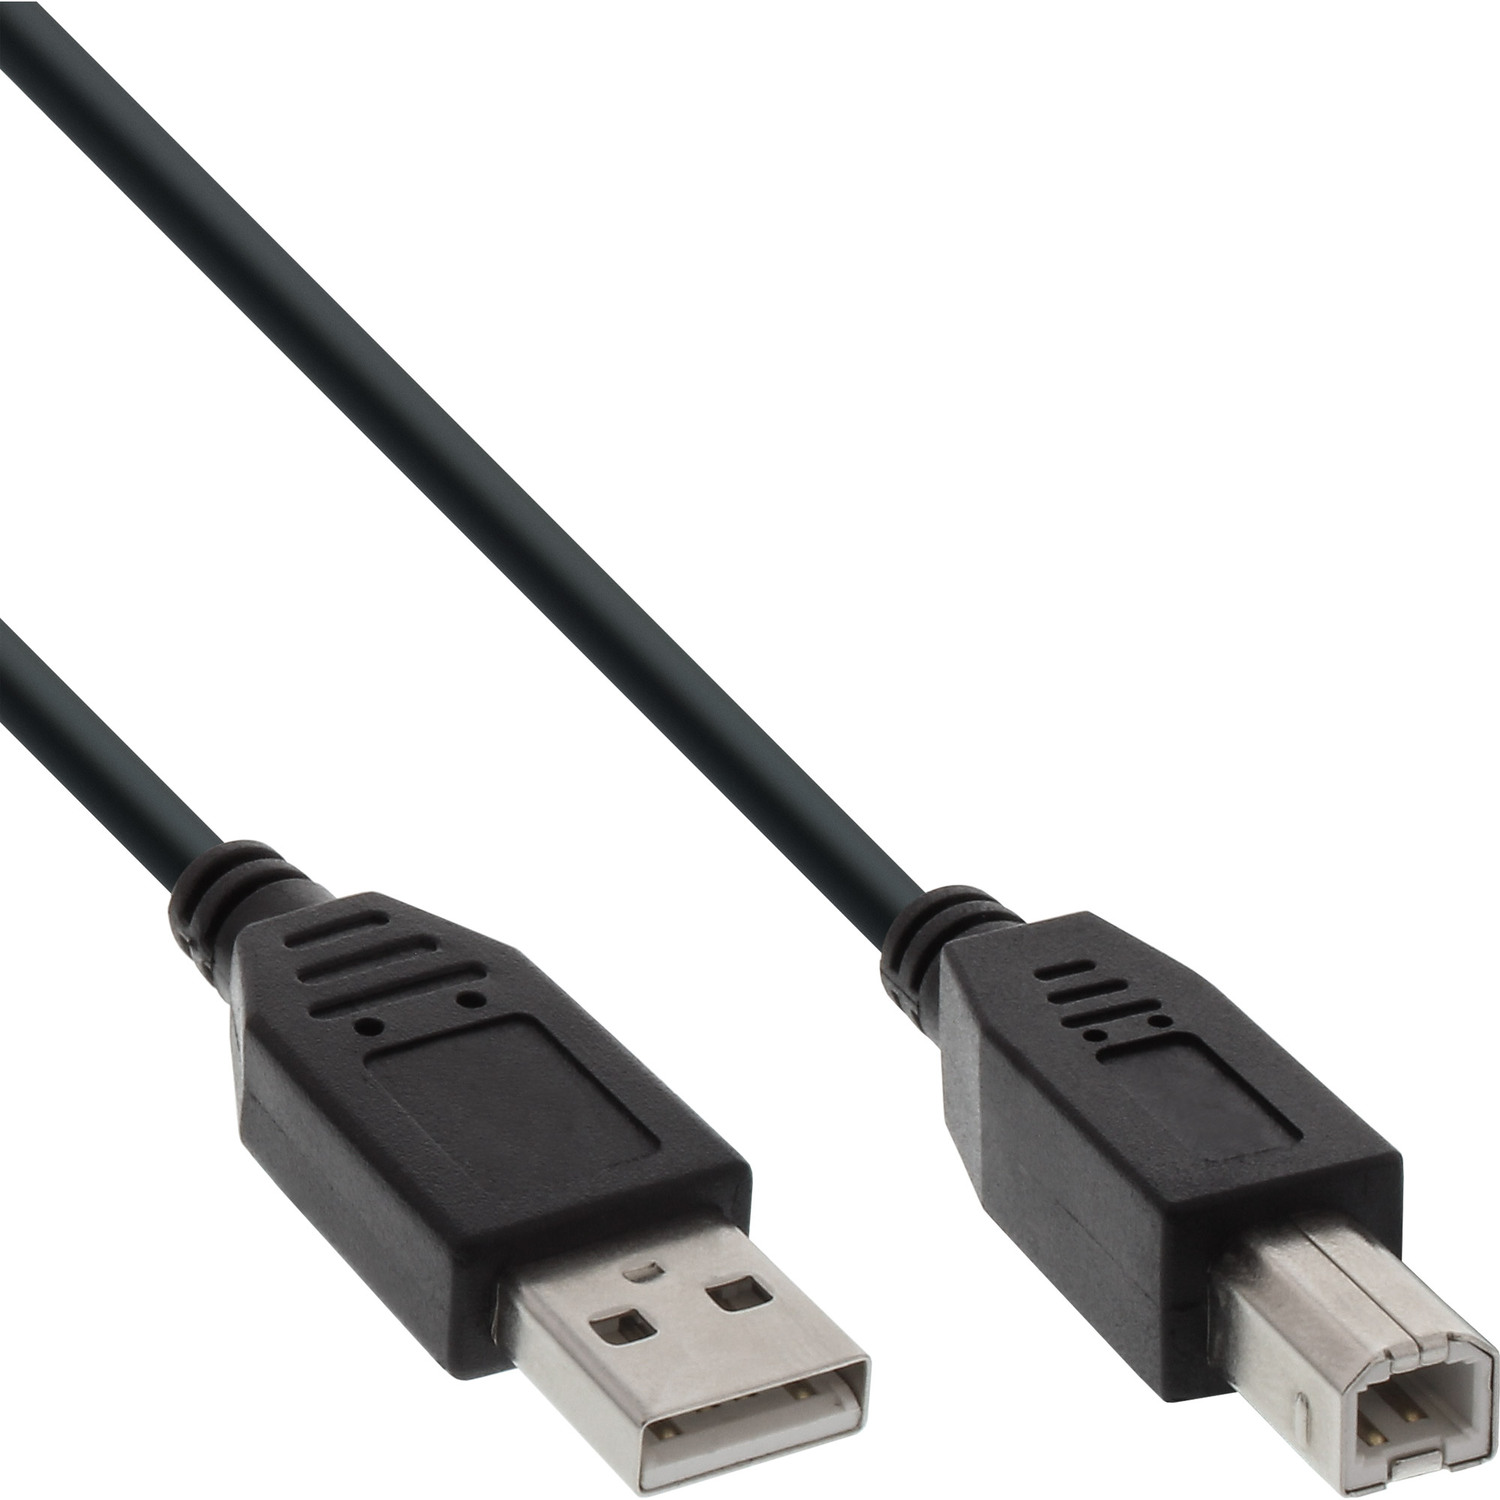 A Kabel, Kabel InLine® 0,5m 2.0 USB USB B, USB schwarz, an USB INLINE 2.0